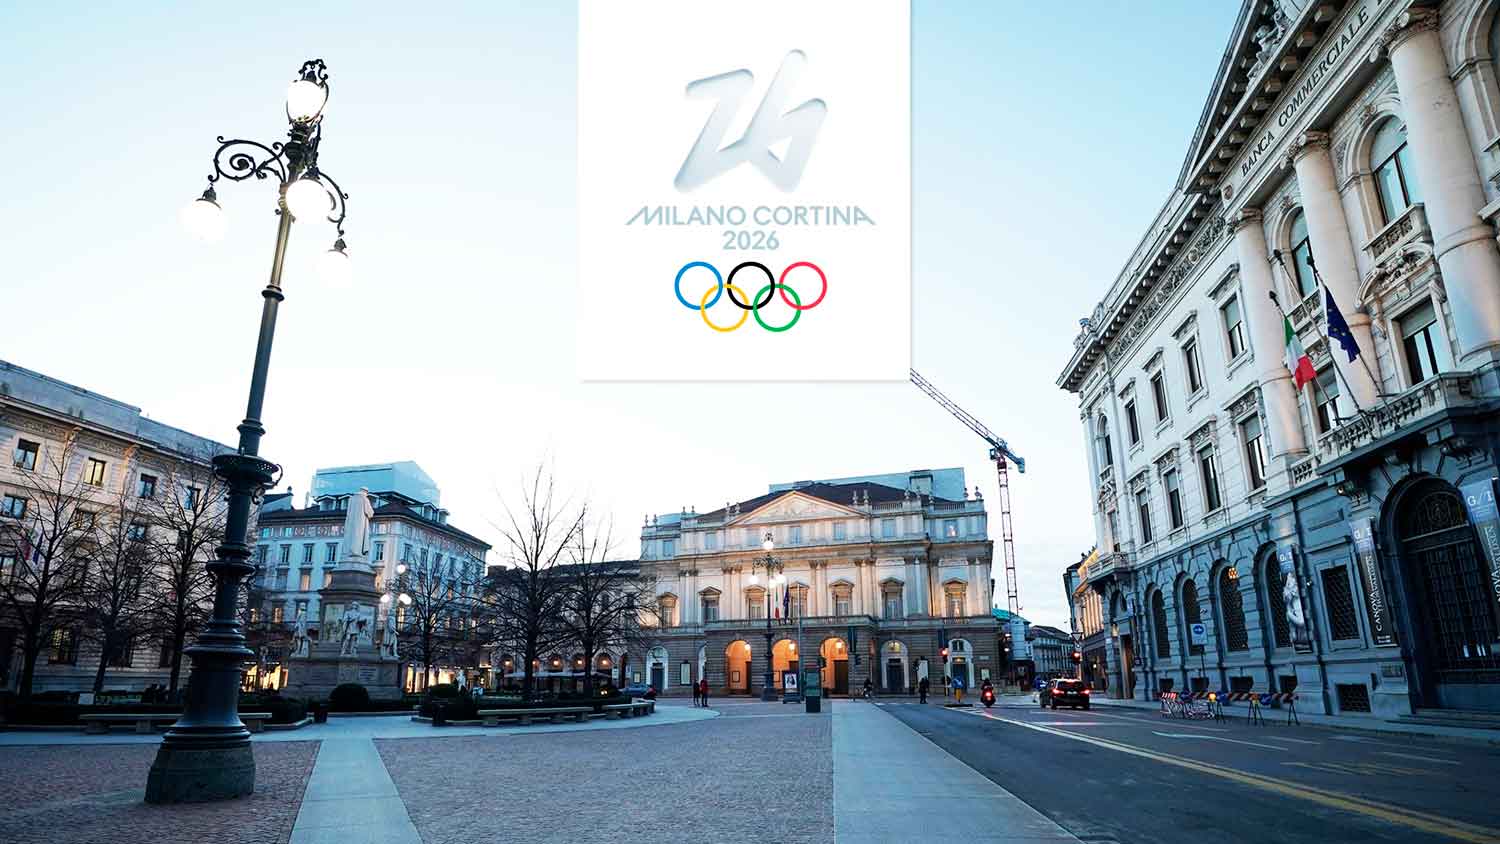 Preparativos para os Jogos de Inverno de Milão Cortina D’Ampezzo 2026 estão a todo vapor